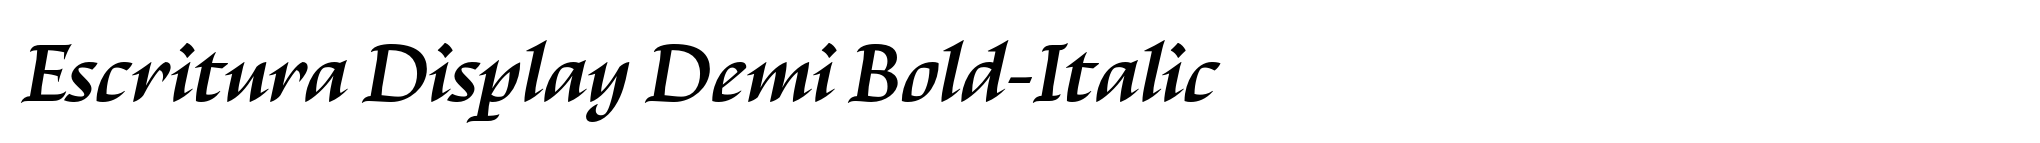 Escritura Display Demi Bold-Italic image